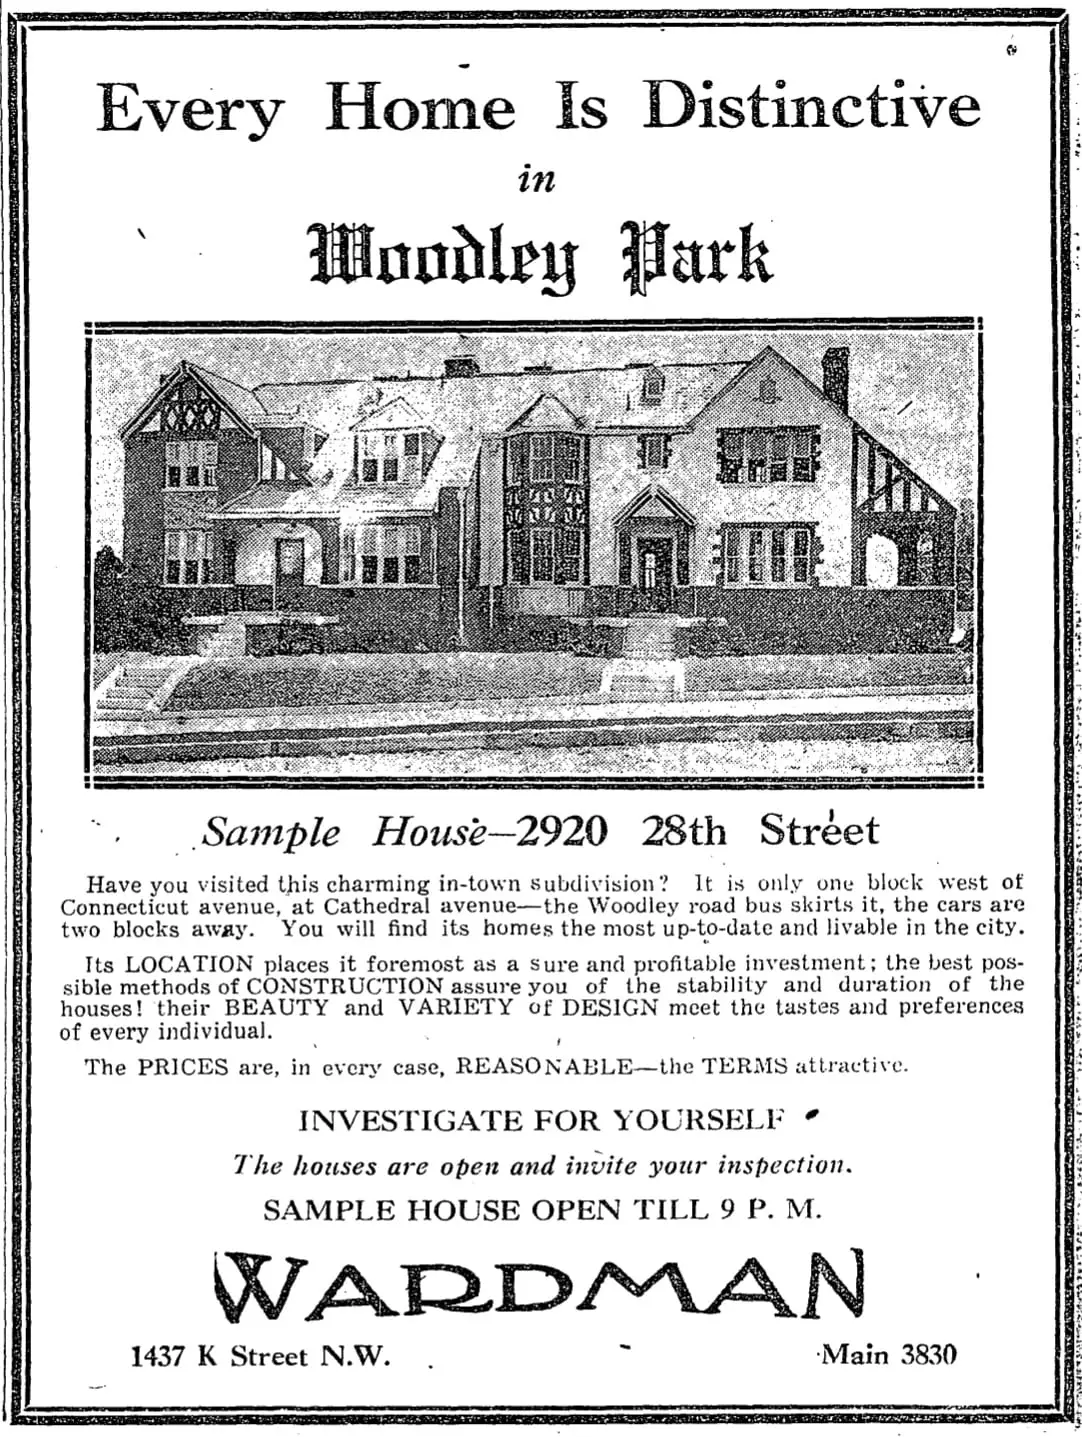 1928 Woodley Park advertisement